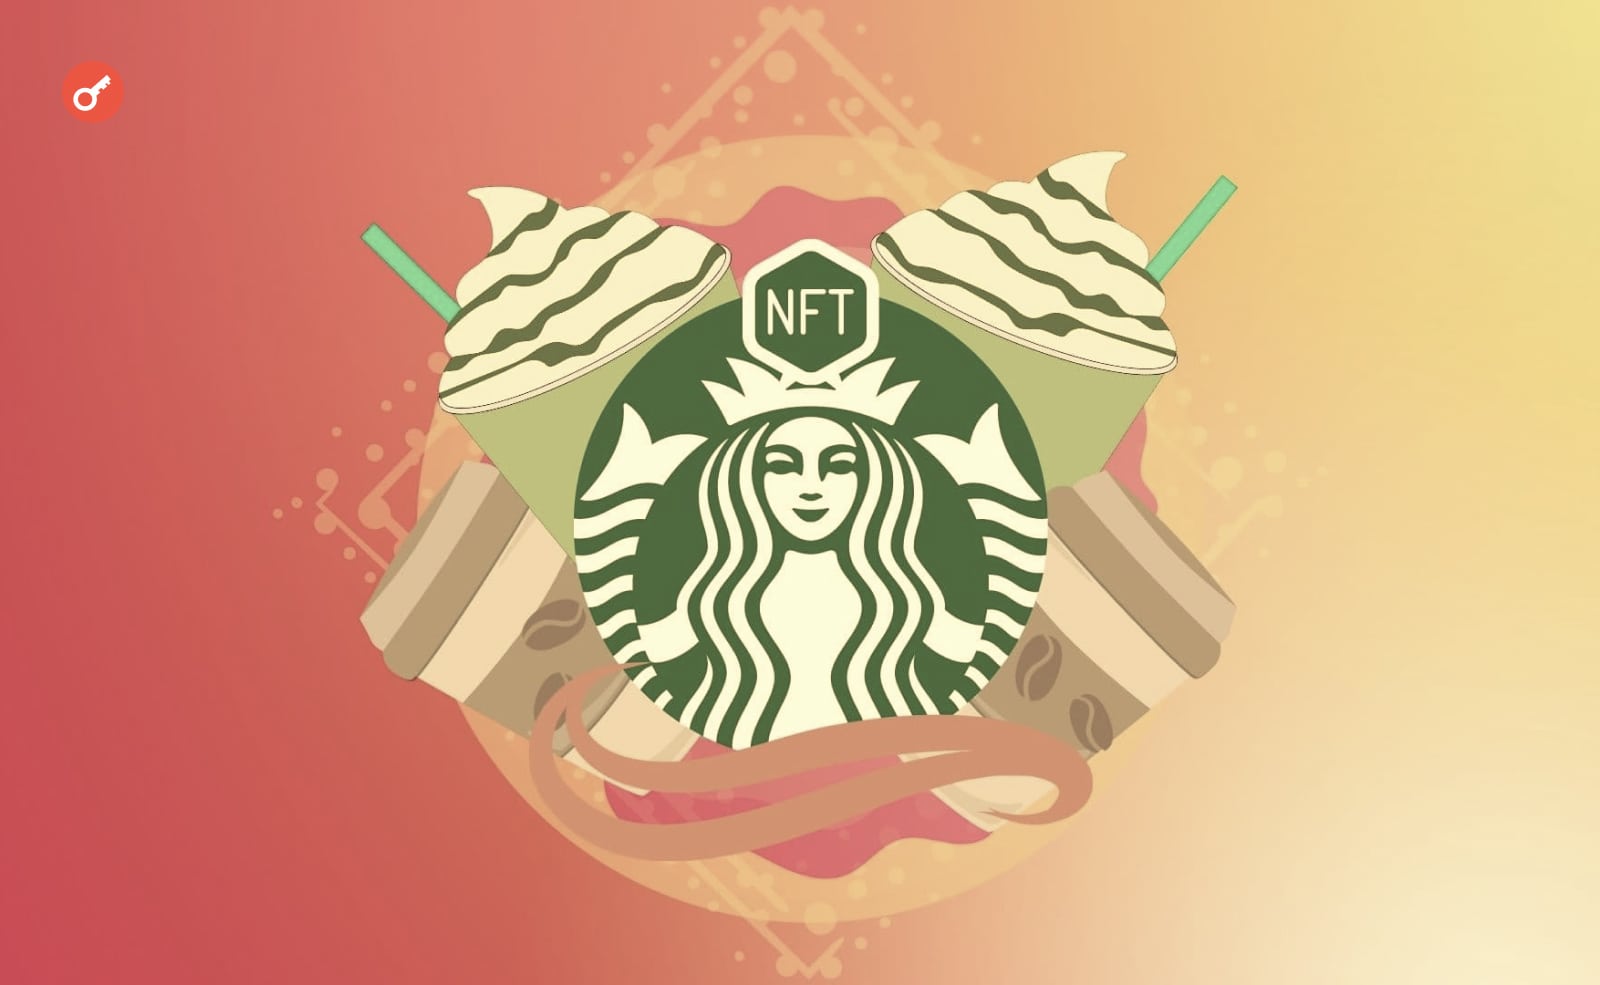 Starbucks випустили першу NFT-колекцію. Її розкупили за 20 хвилин. Головний колаж новини.